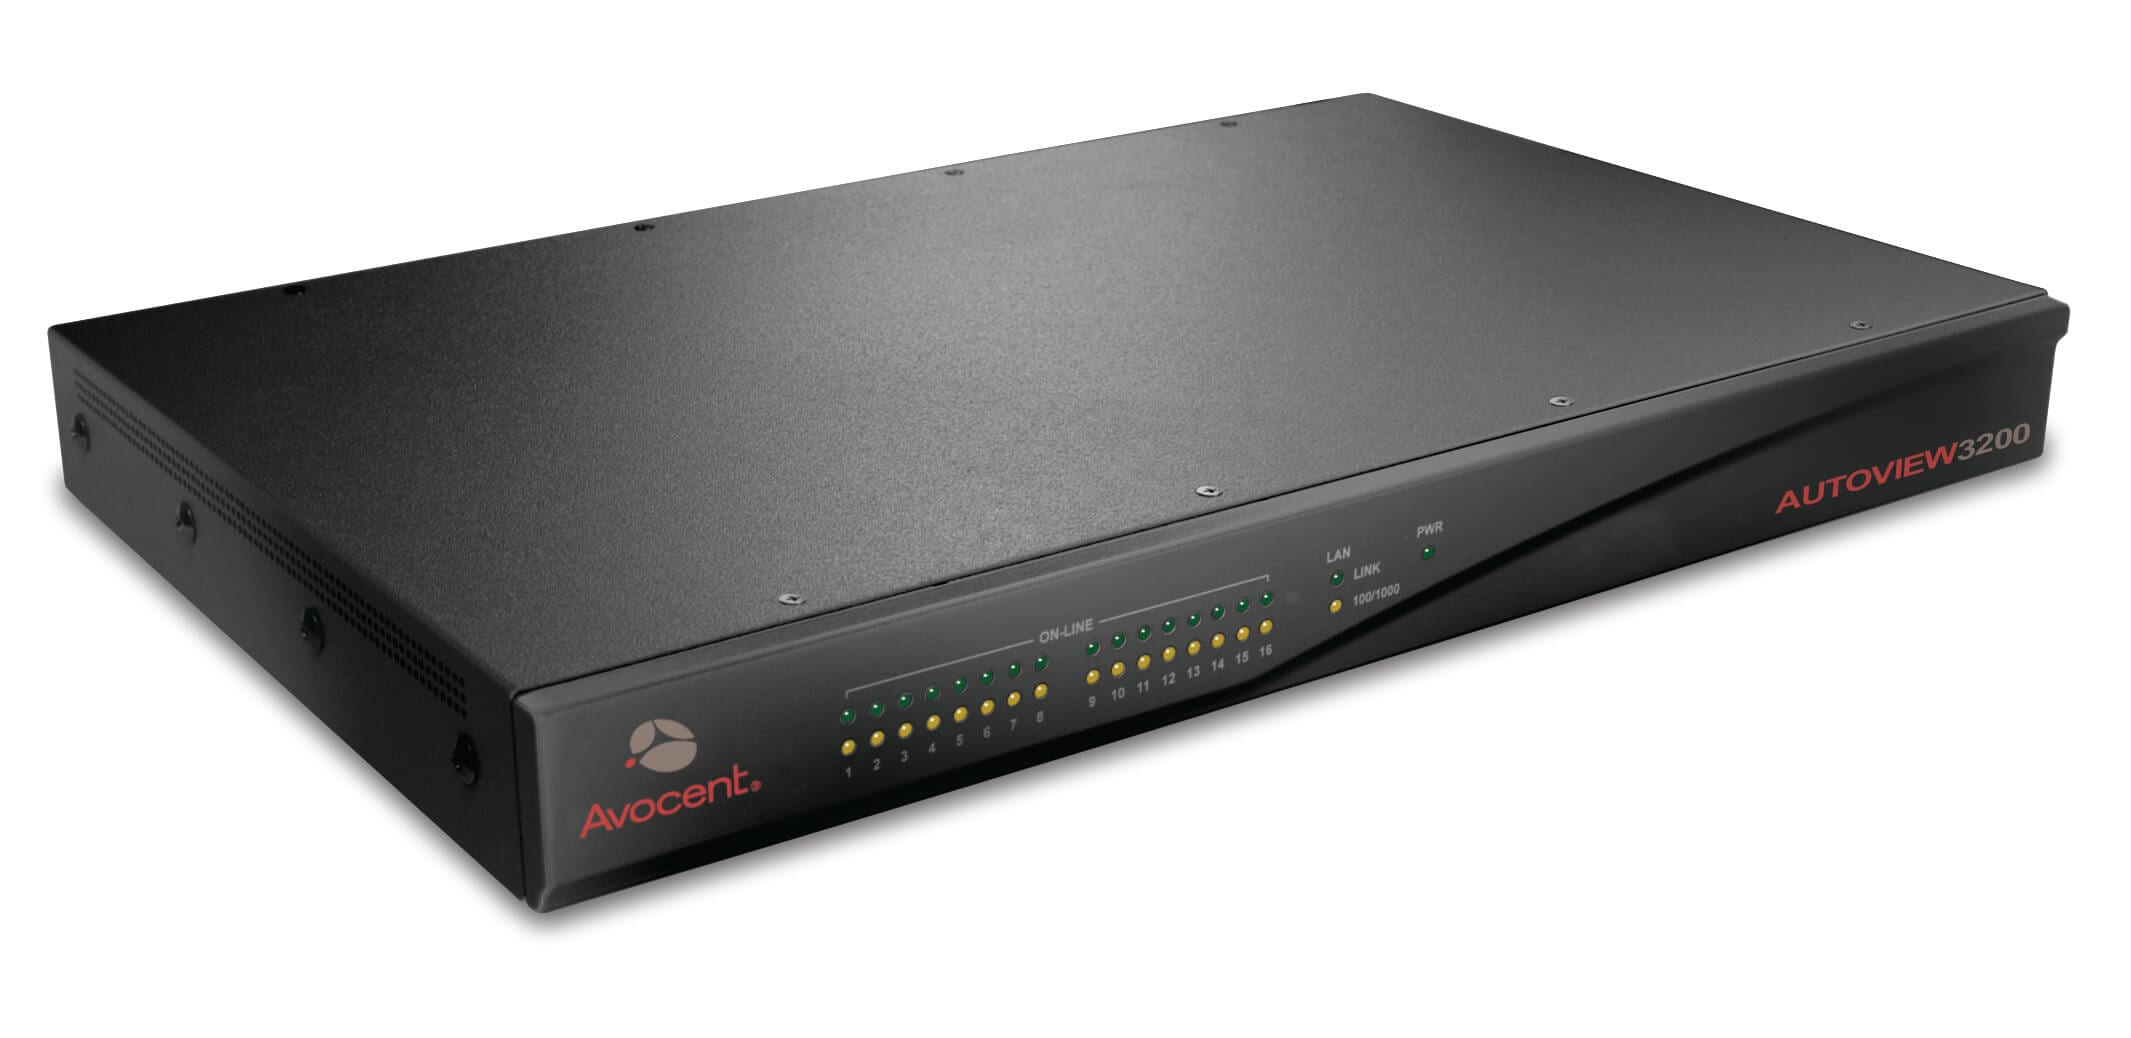 Common Framework Avocent AV 3008, AV 3016 and AV 3200 Digital KVM Switches